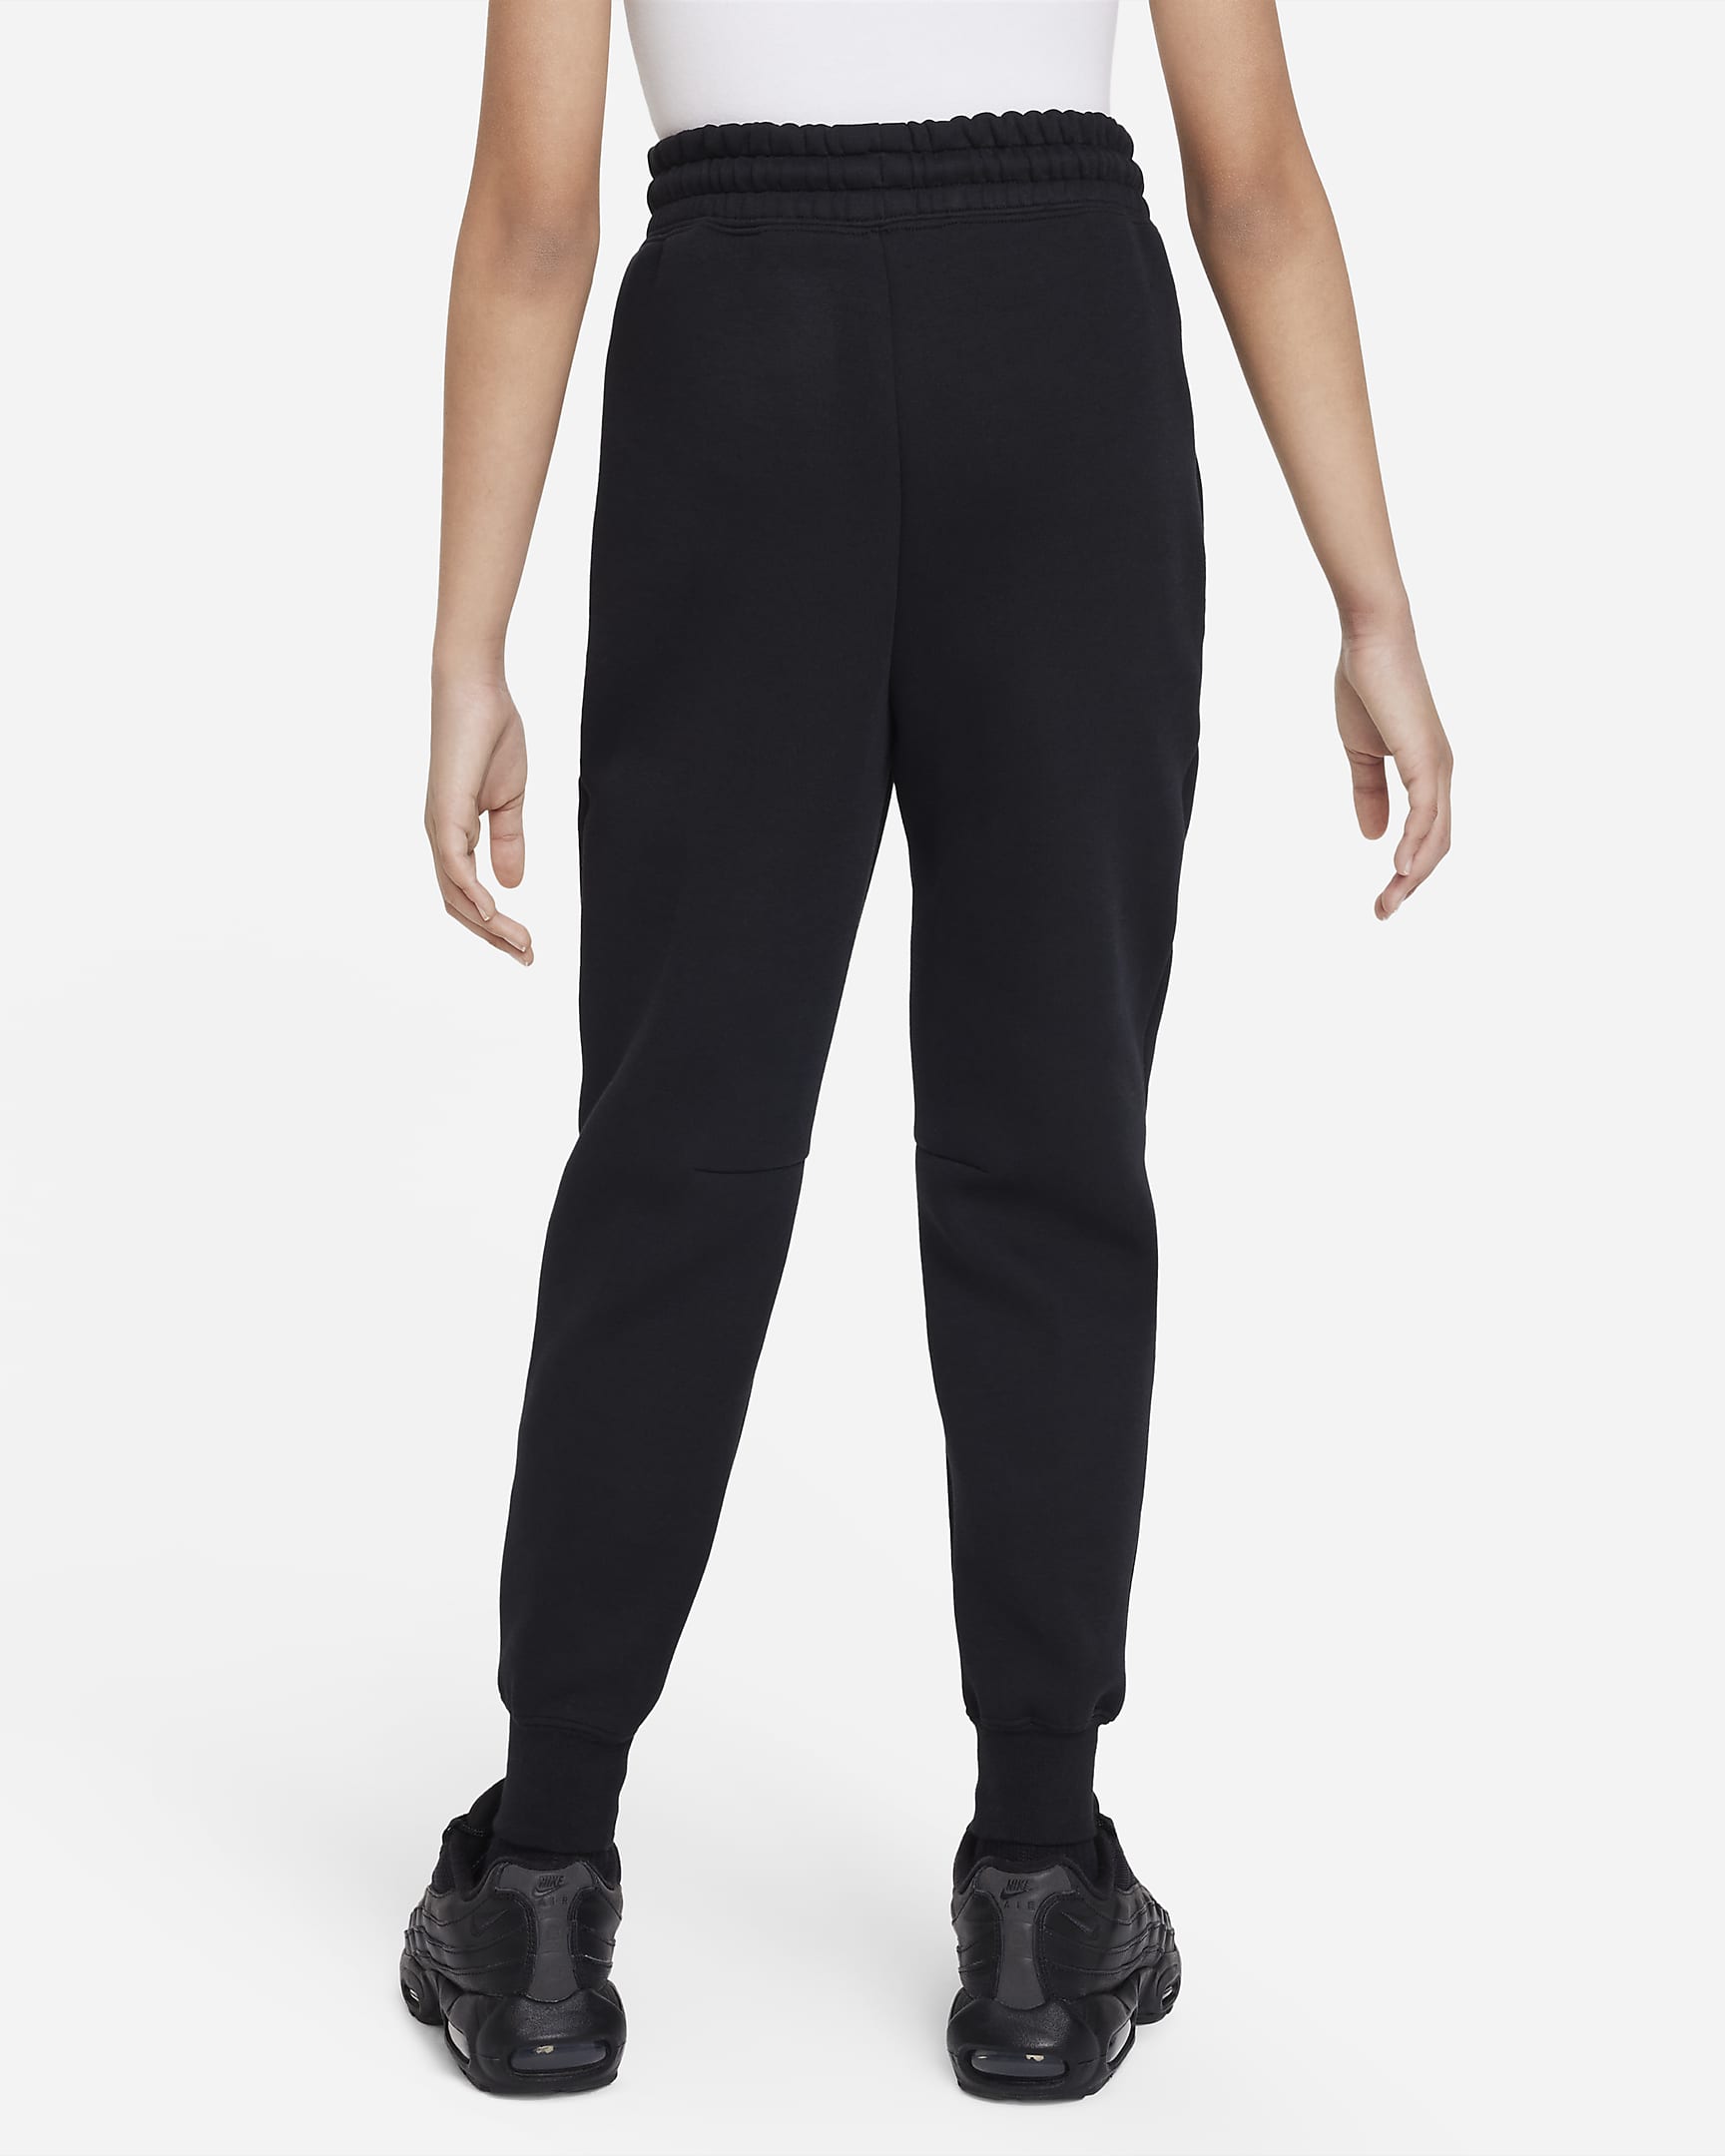 Nike Sportswear Tech Fleece Older Kids' (Girls') Joggers - Black/Black/Black